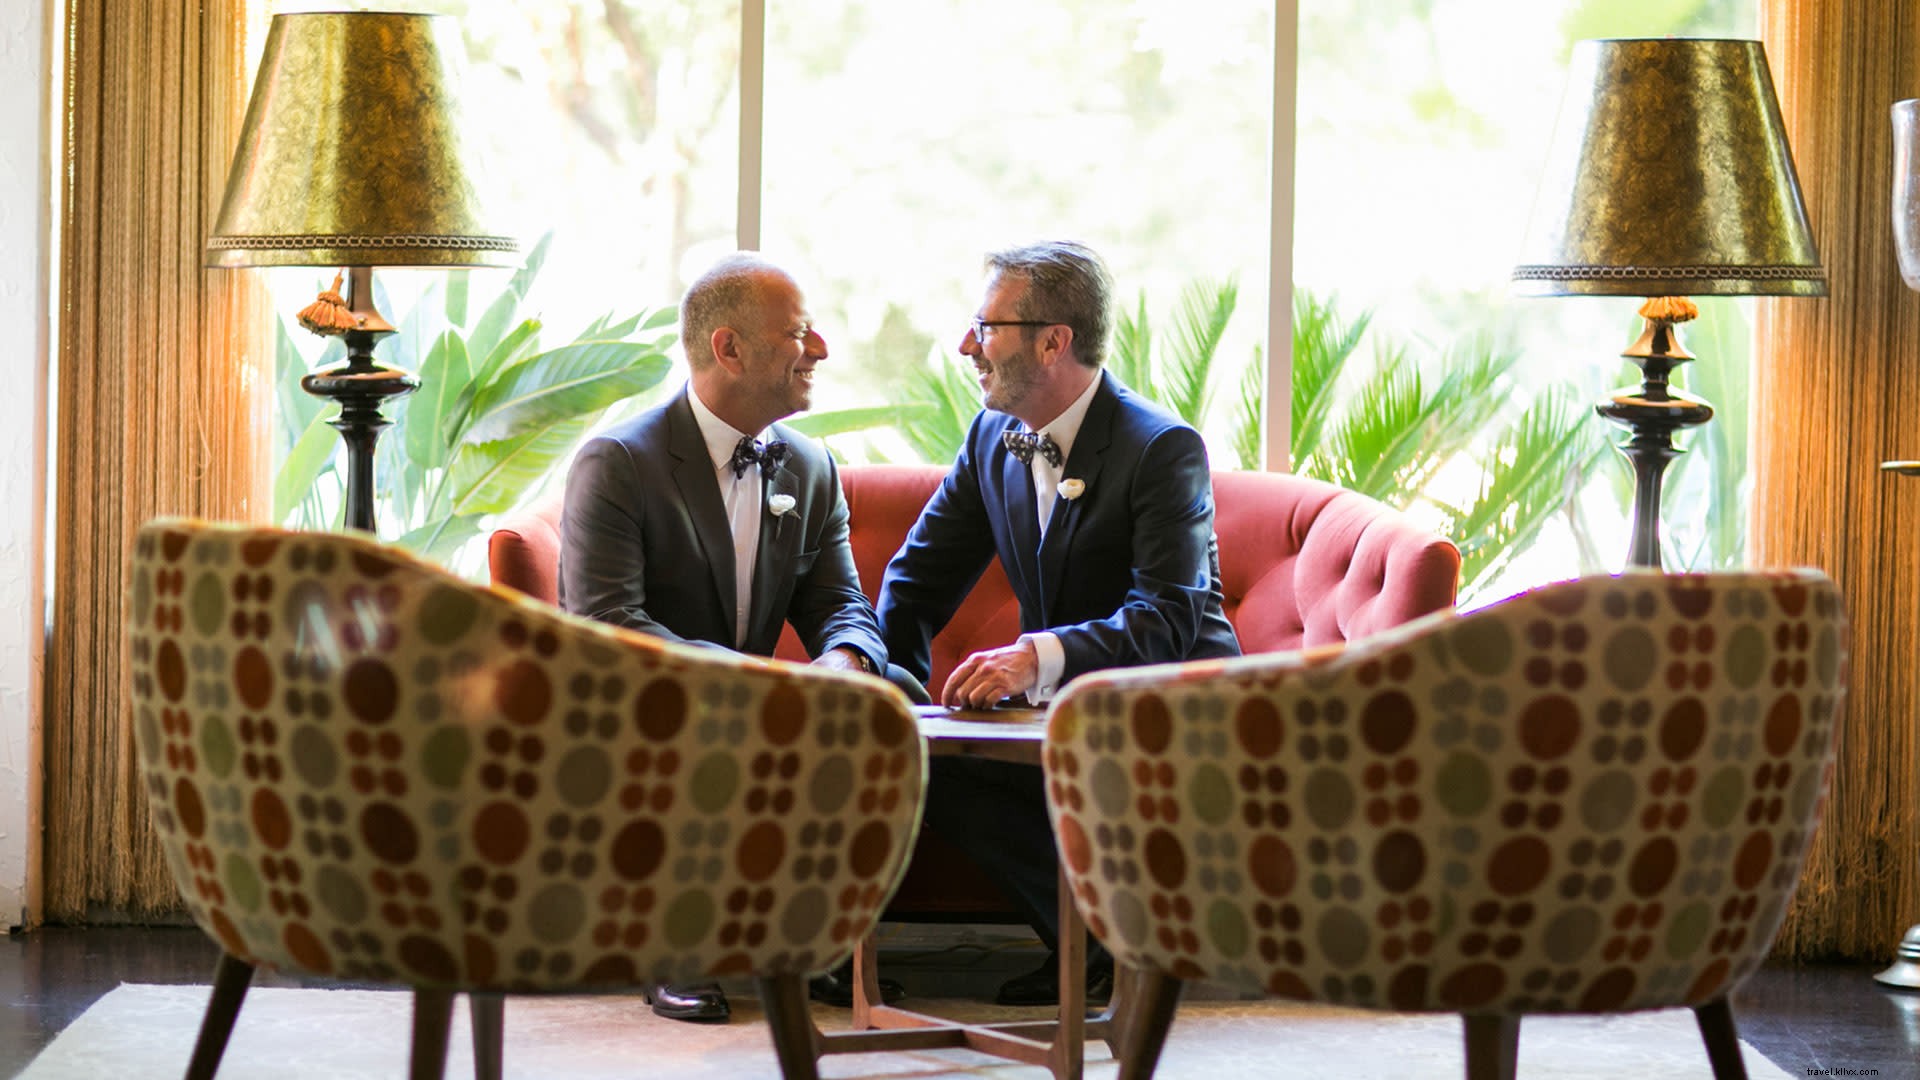 Pasangan LGBT Menemukan Kebahagiaan Pernikahan di Greater Palm Springs 